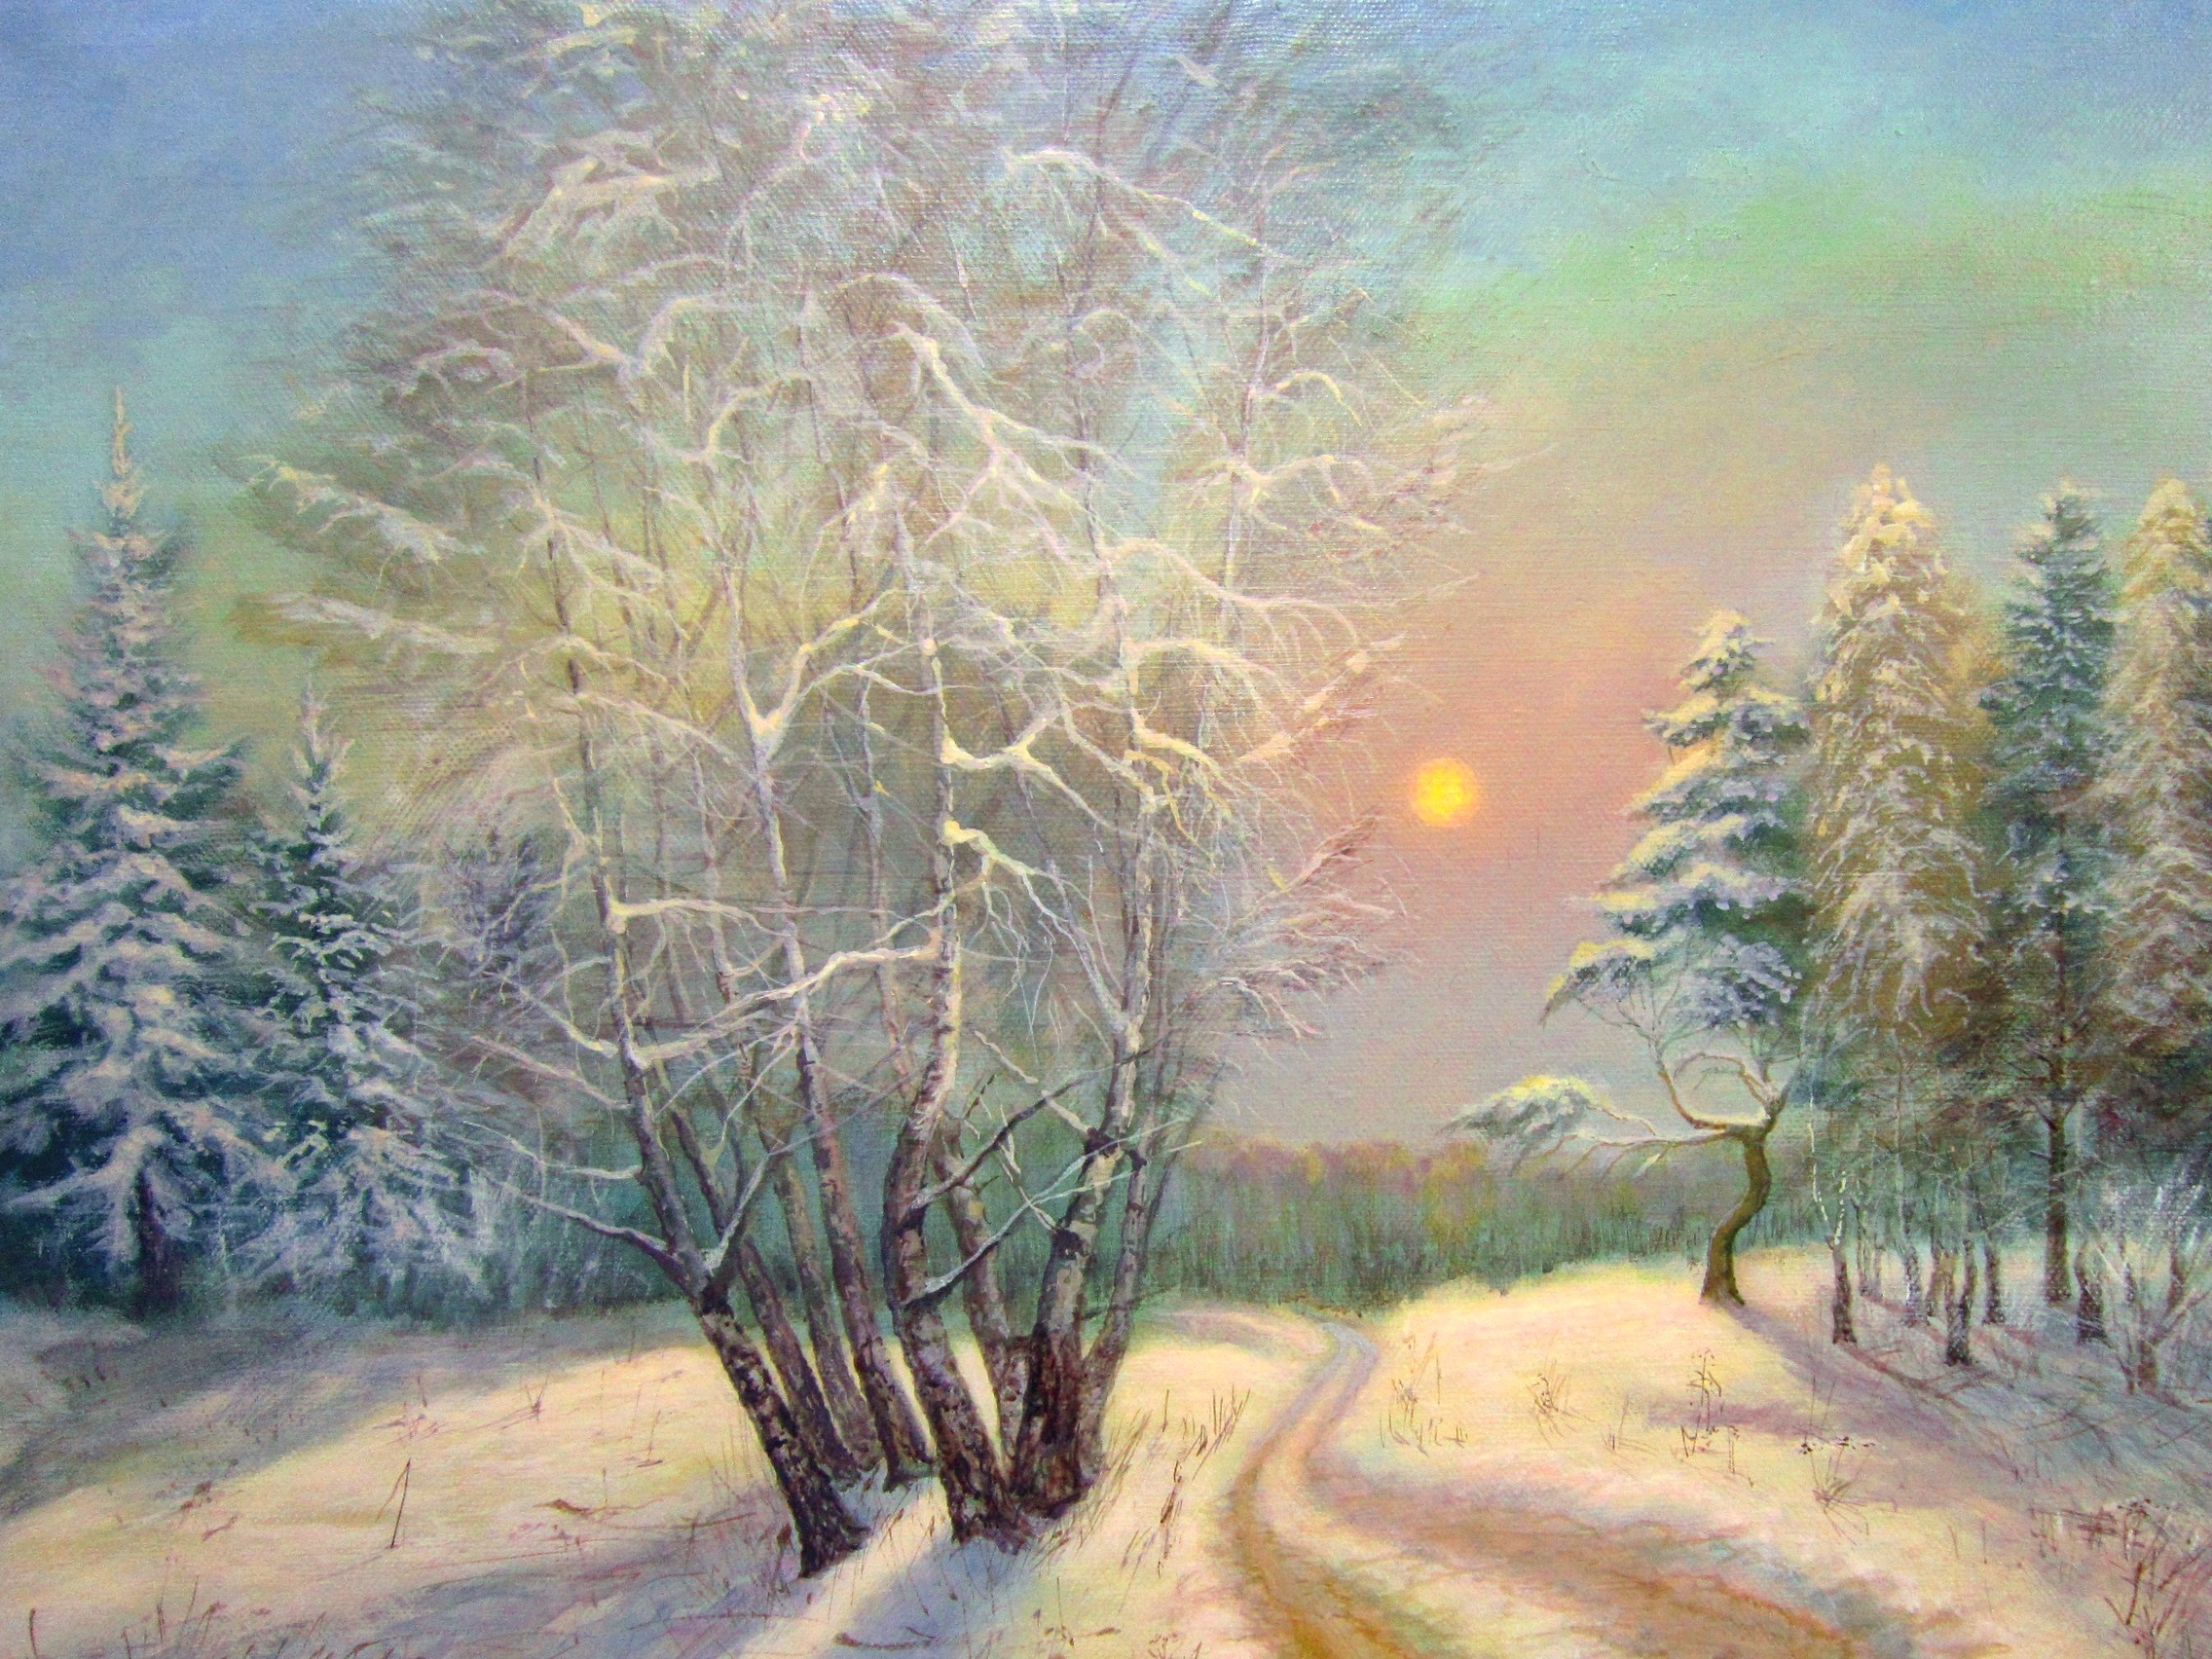 Произведение зимняя дорога. Мелколесье степь и дали Есенин. Фет русский пейзажист художник.